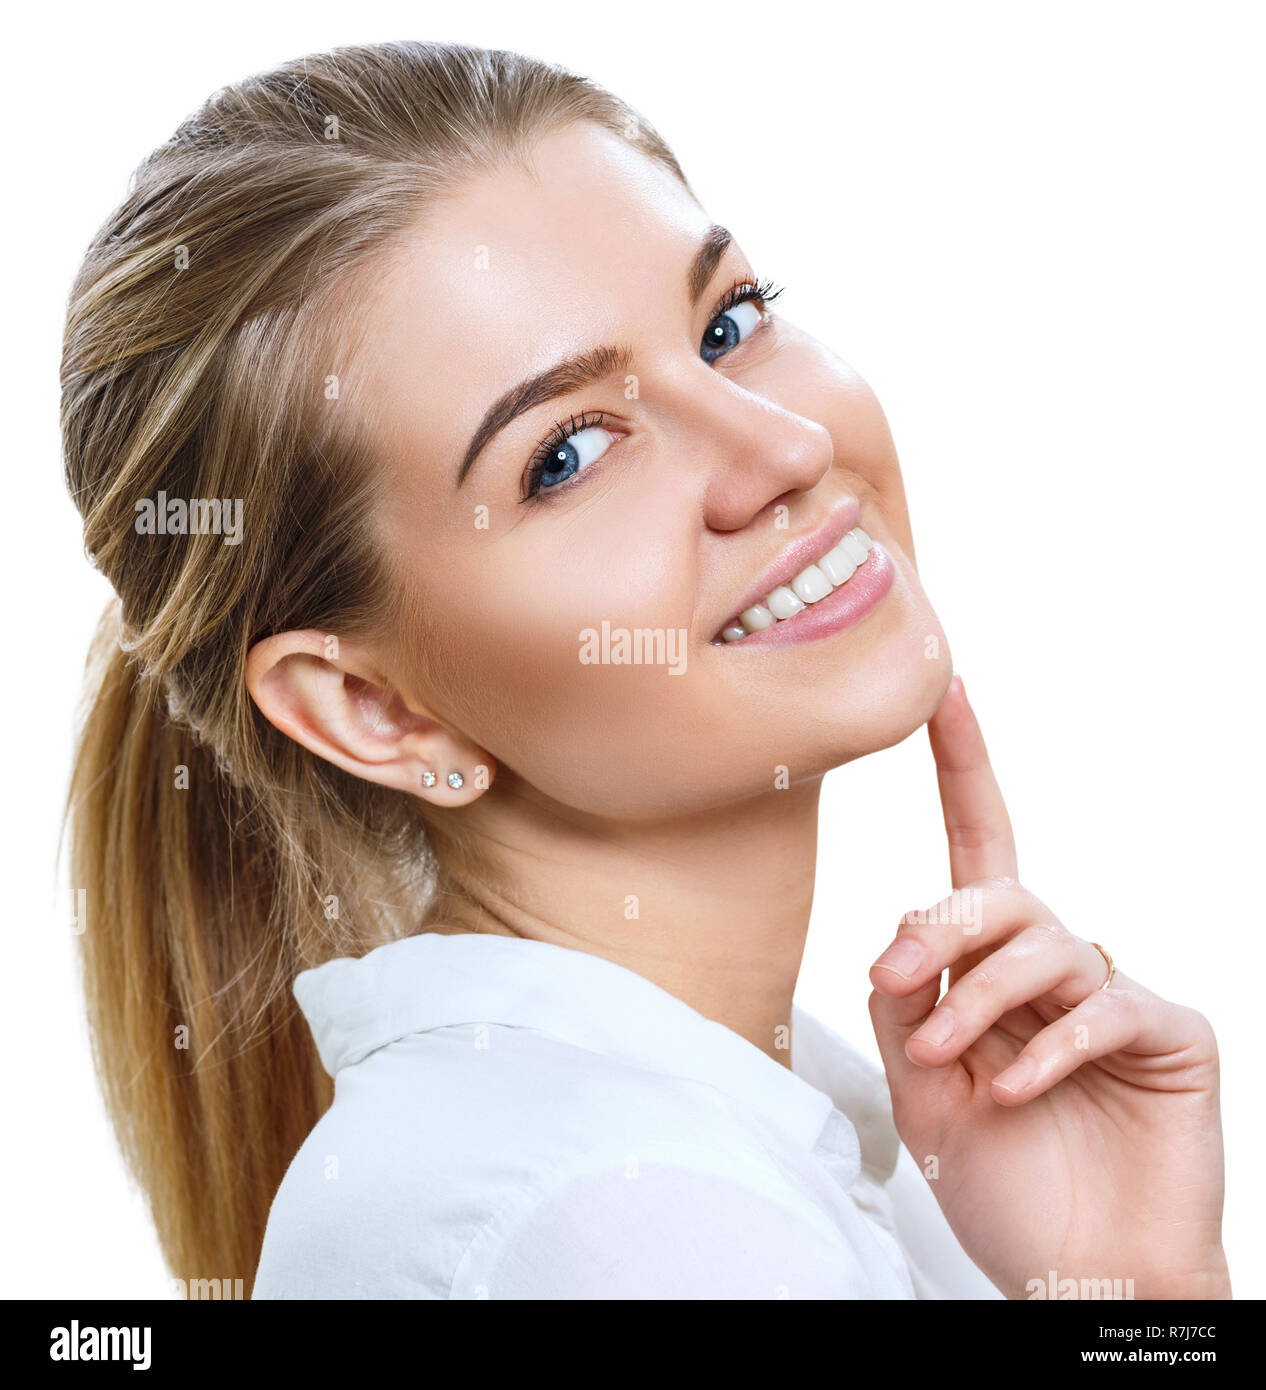 Portrait of attractive young smiling woman avec des cheveux blonds. Isolé sur blanc. Banque D'Images